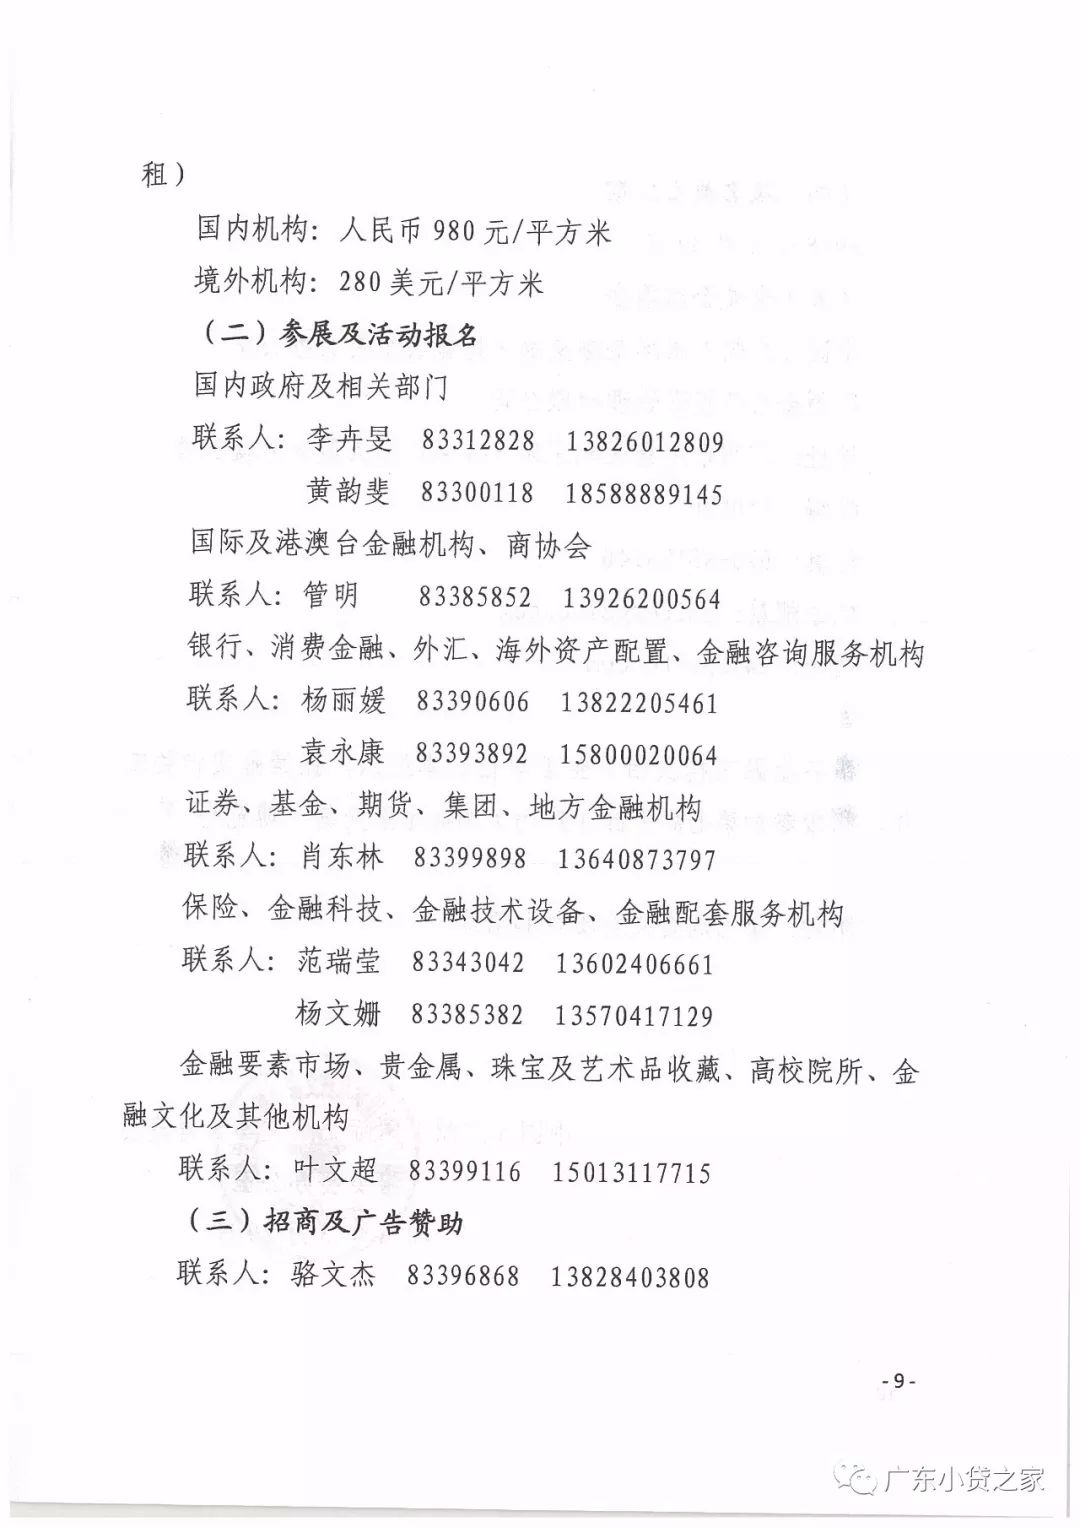 【协会通知】关于邀请会员单位参加第七届中国（广州）国际金融交易•博览会的通知